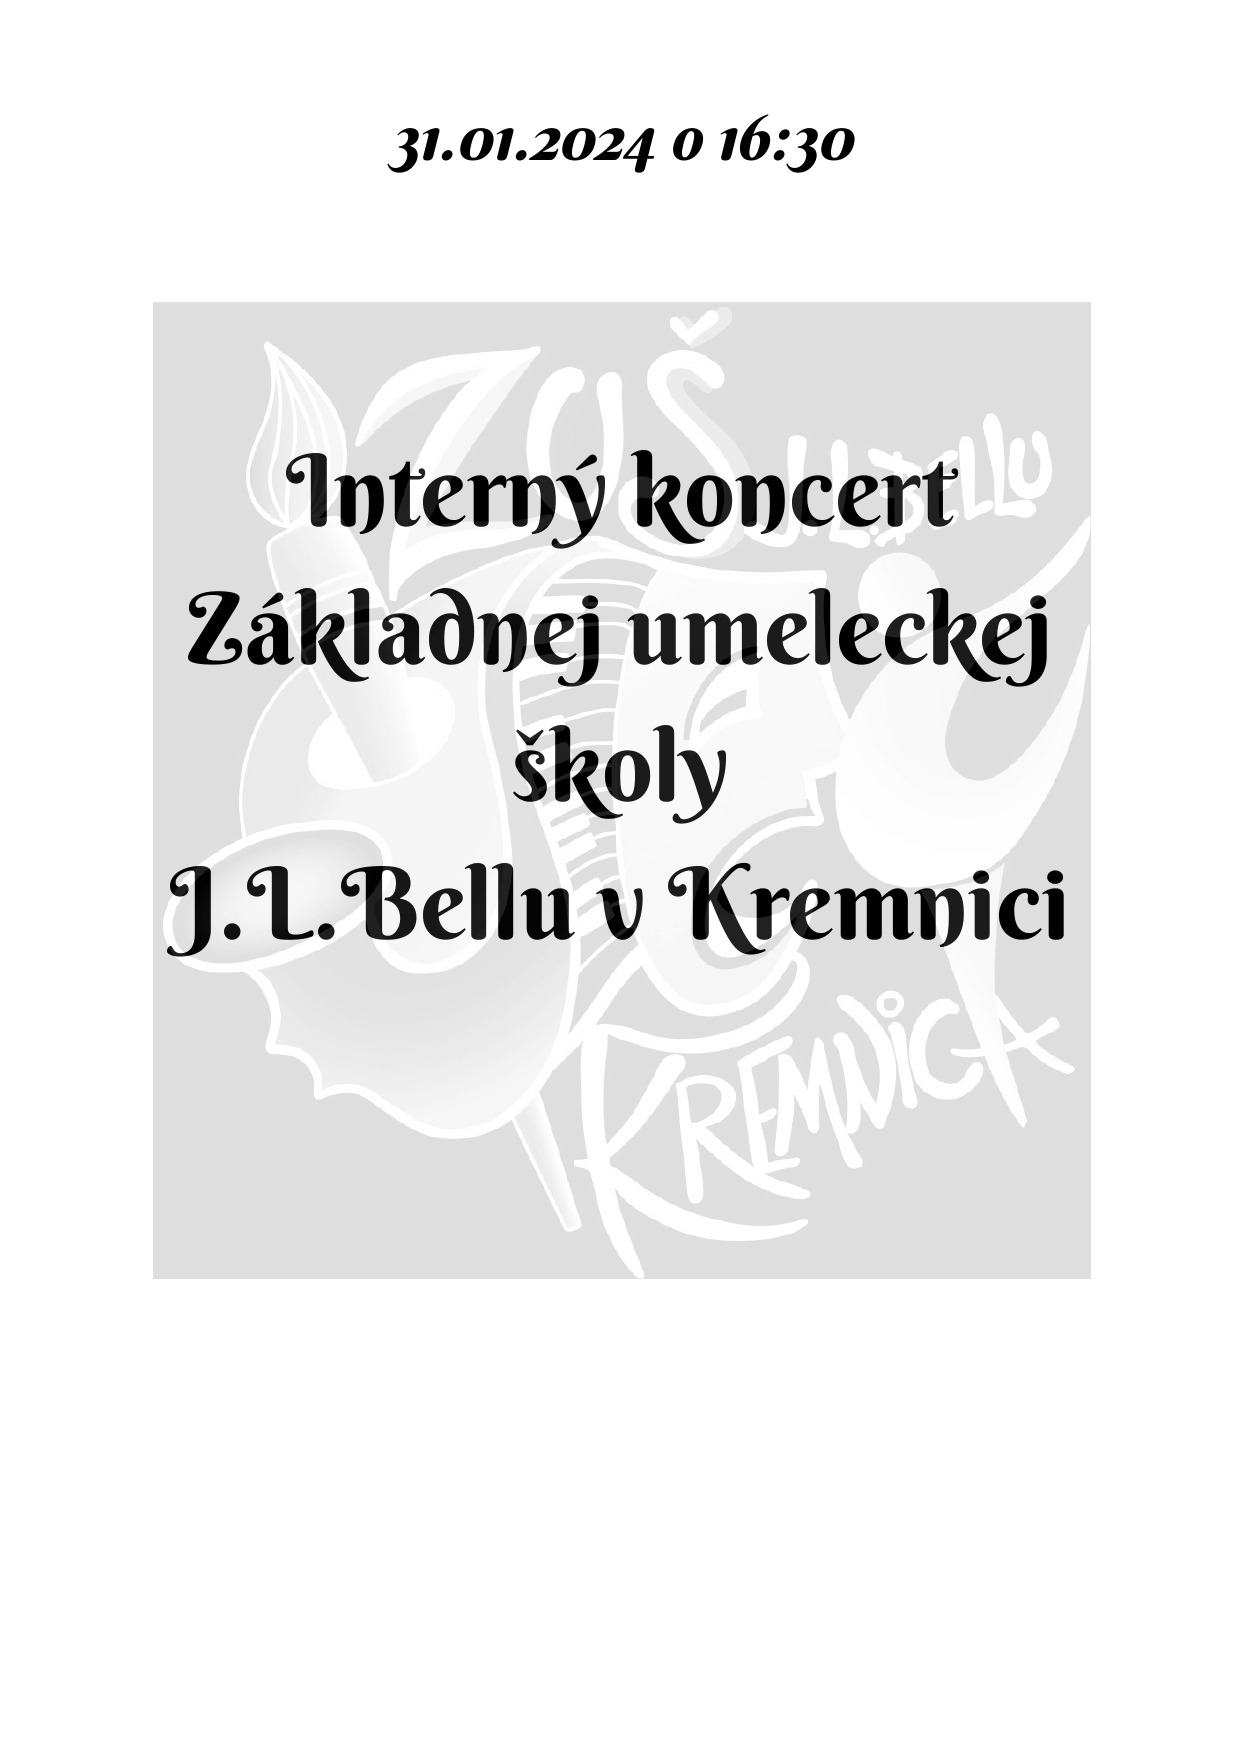 Pozvánka na interný koncert dnes 31.01. o 16:30 v sále ZUŠ, alebo online - Obrázok 1